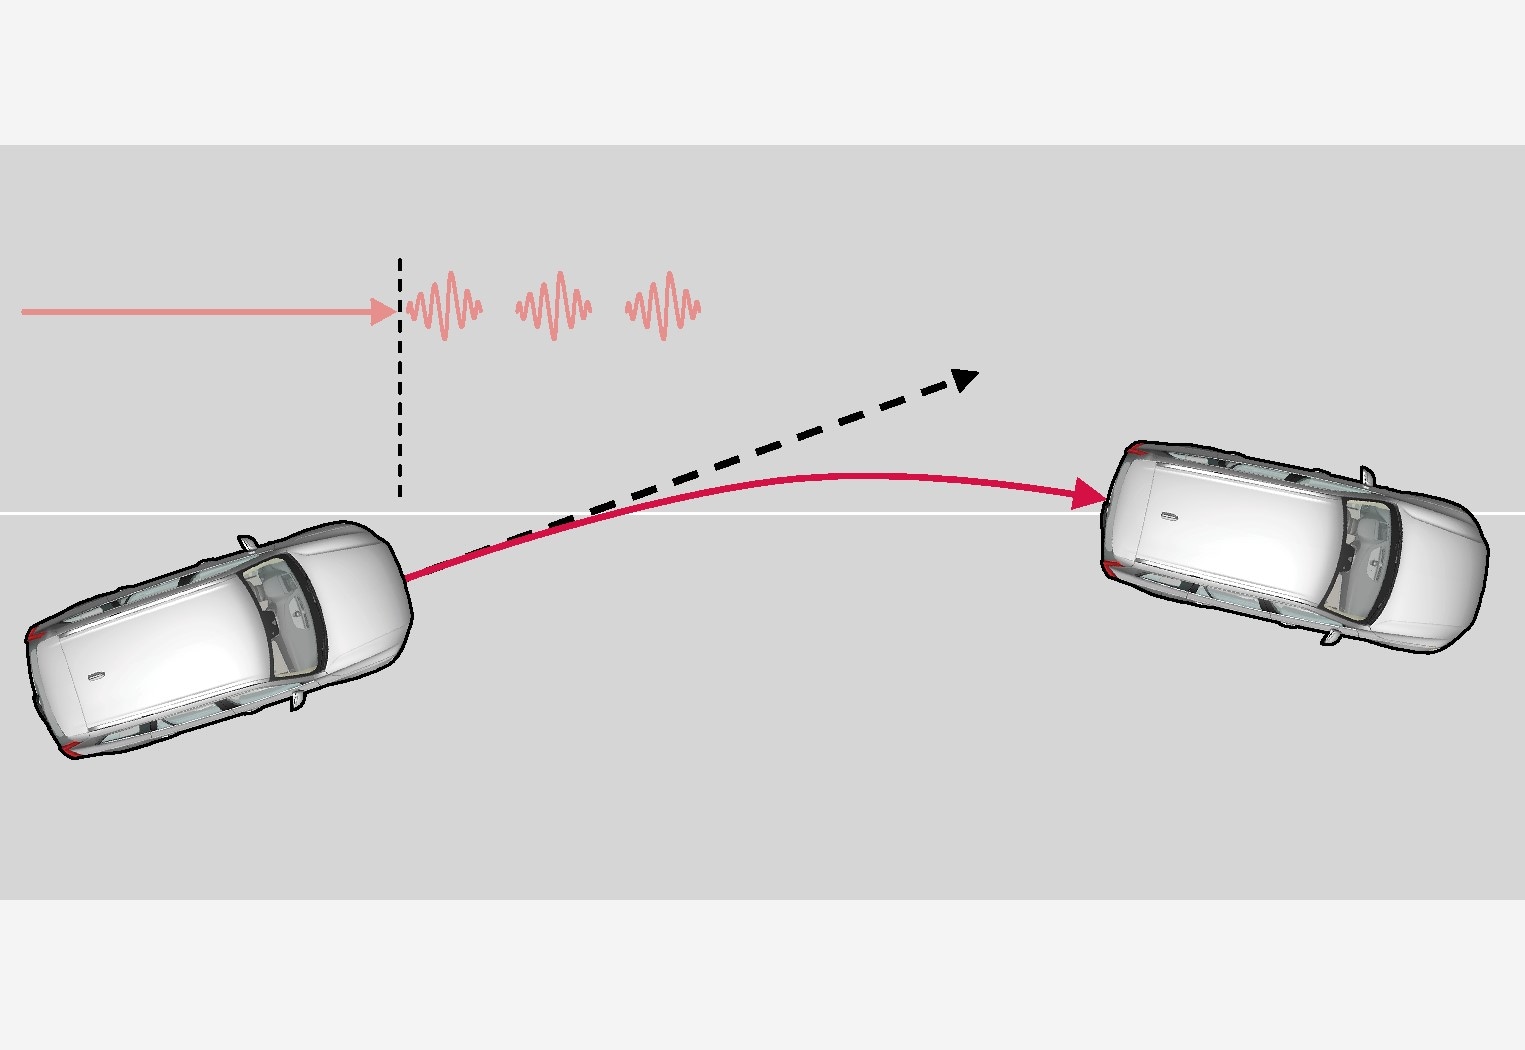 Sõiduraja abifunktsioon hoiatab rooli vibreerimise kauduRooli pulseerimine erineb – mida kauem auto oma sõidureast väljas püsib, seda kauem rool pulseerib..